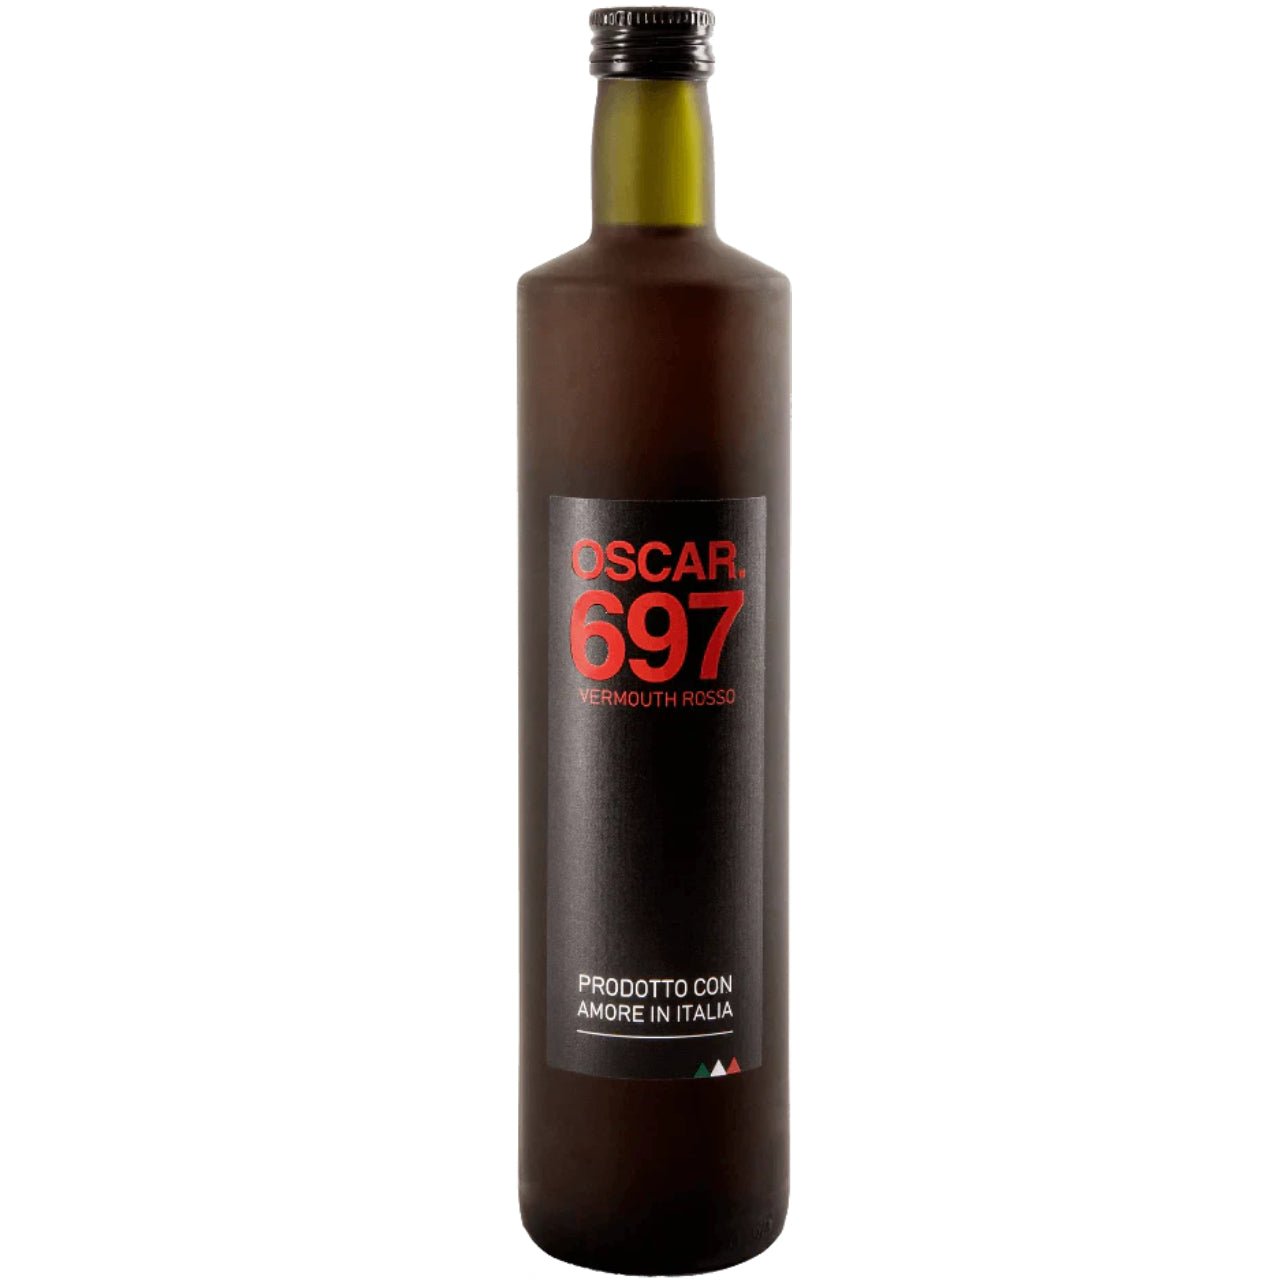 Oscar 697 Rosso Vermouth - Vermouth - Liquor Wine Cave